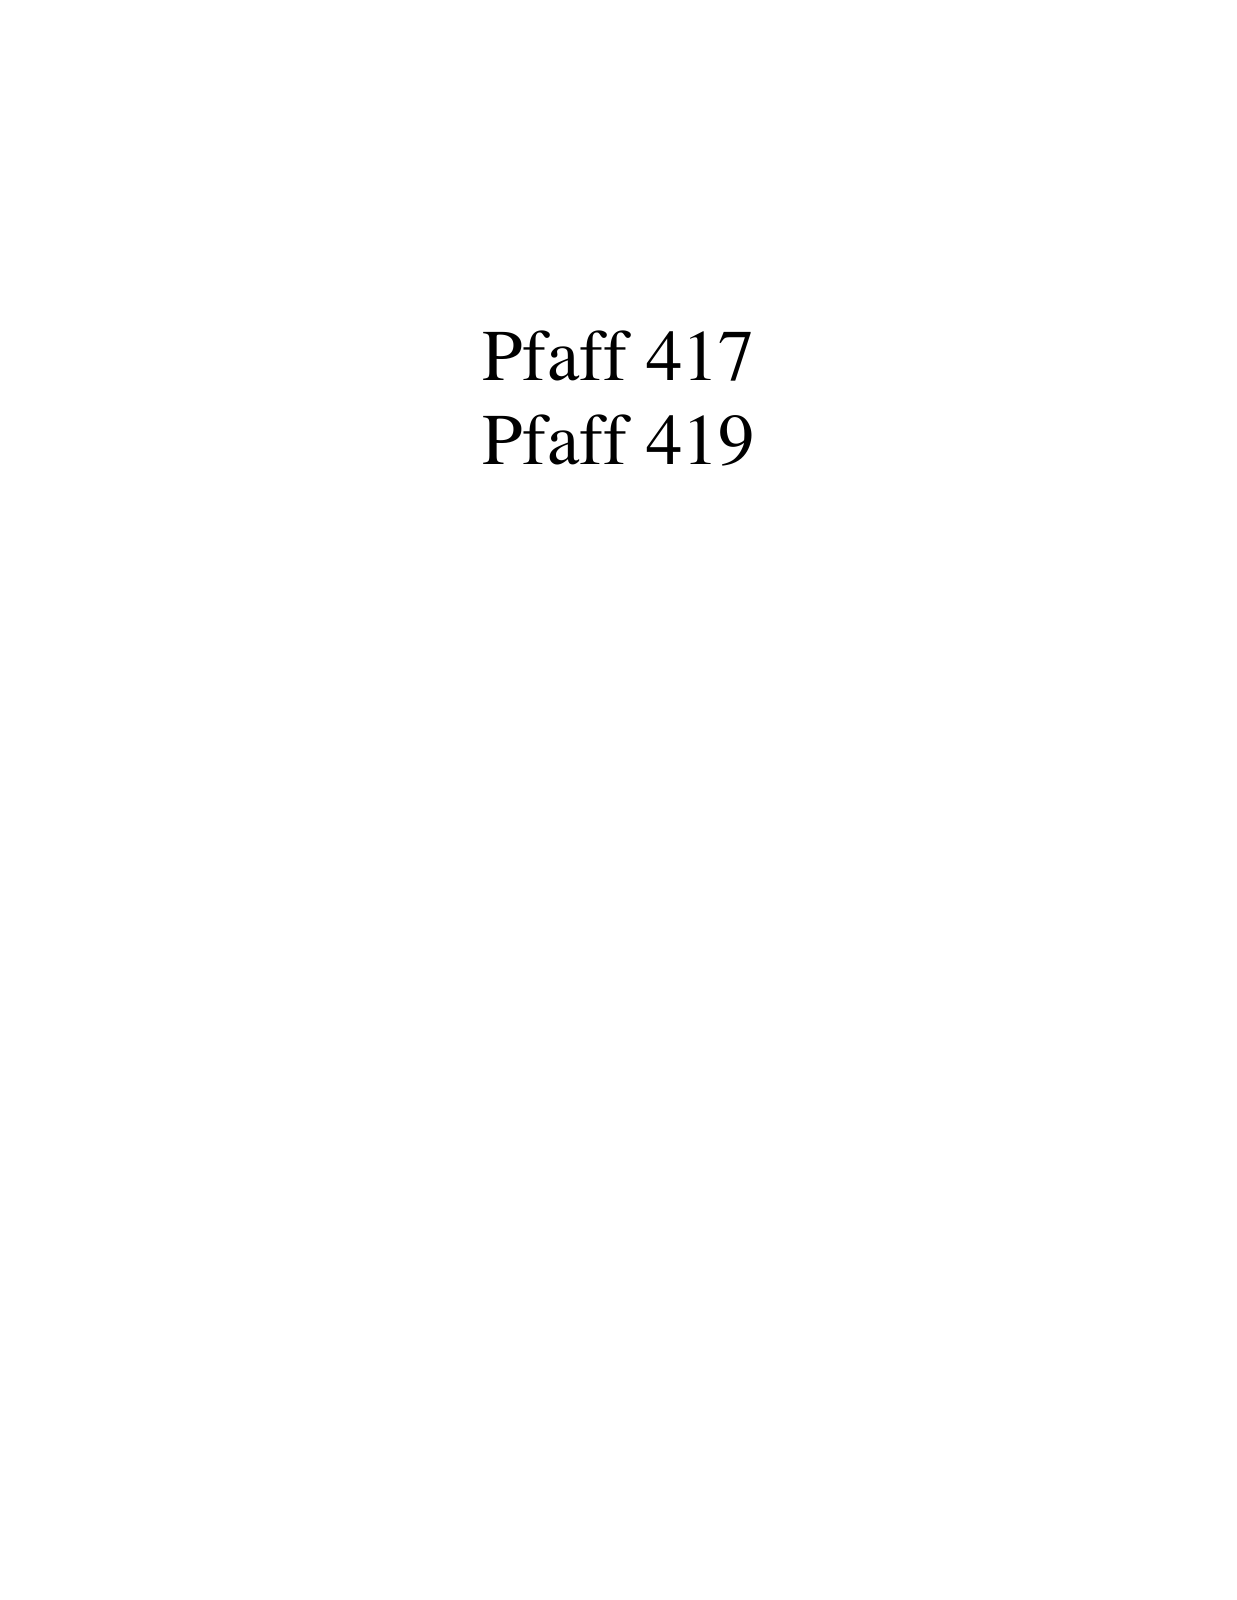 PFAFF 417, 419 Parts List